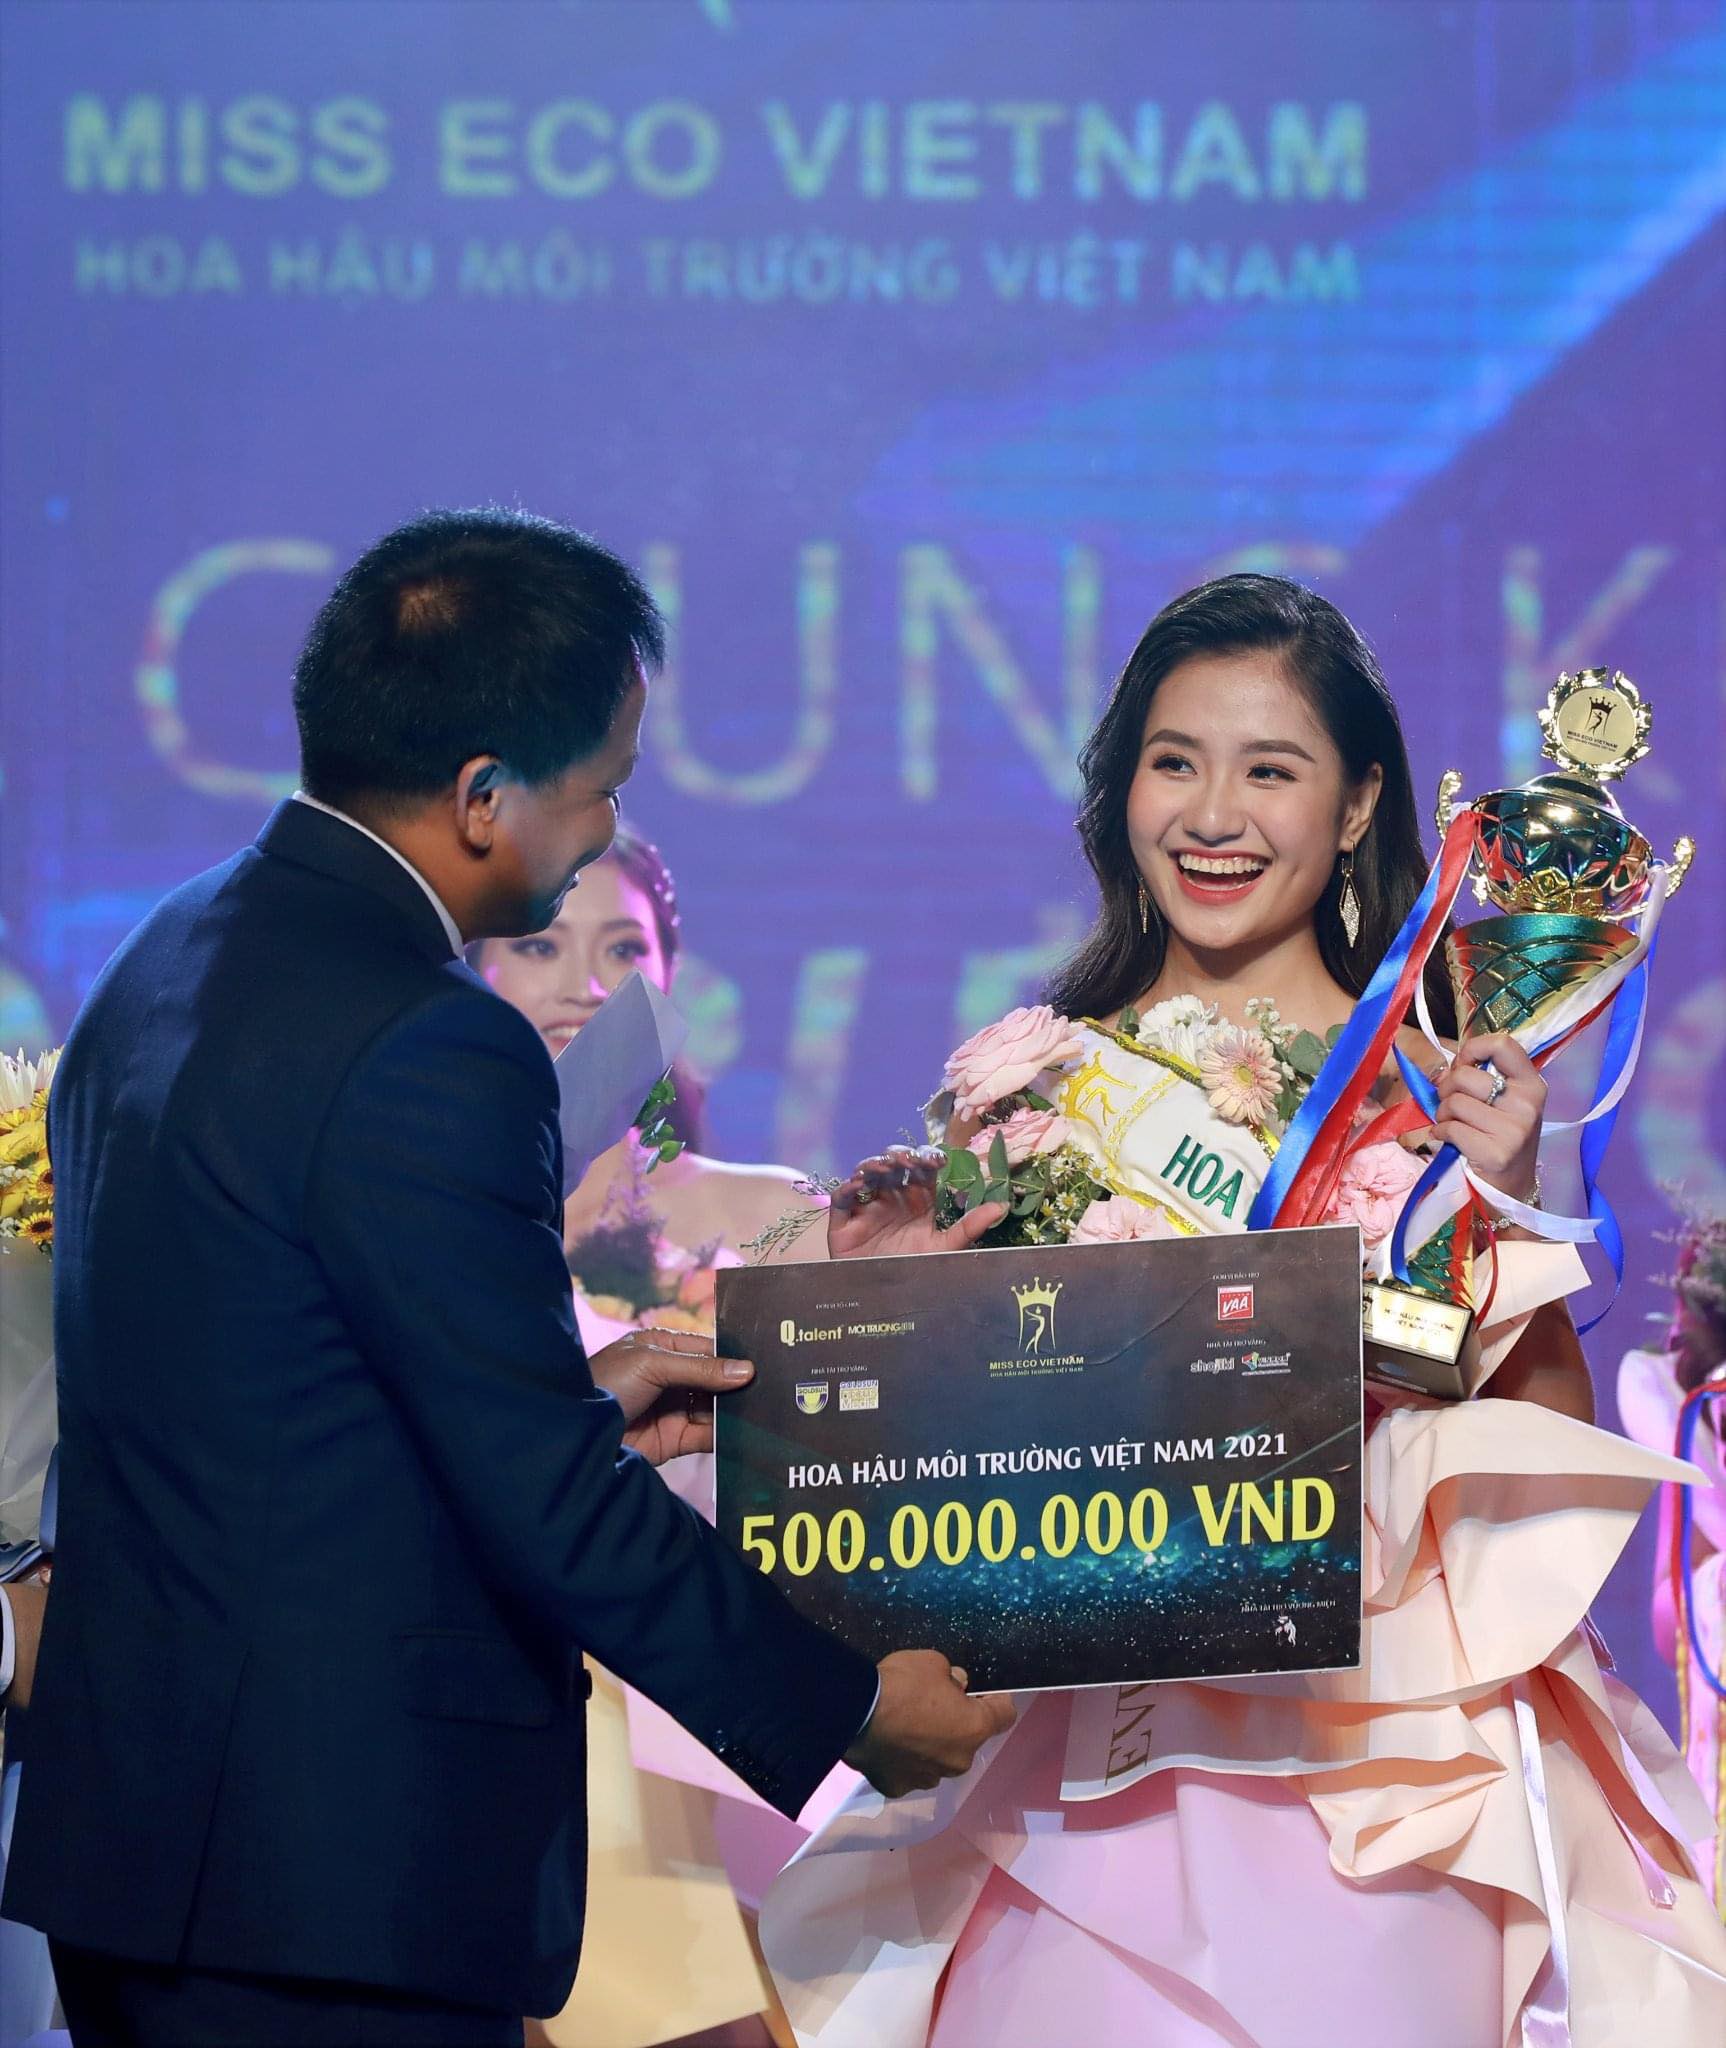 Hình ảnh bất ngờ của mỹ nhân 19 tuổi sau 8 tháng đăng quang “Hoa hậu Môi Trường Việt Nam” - 1